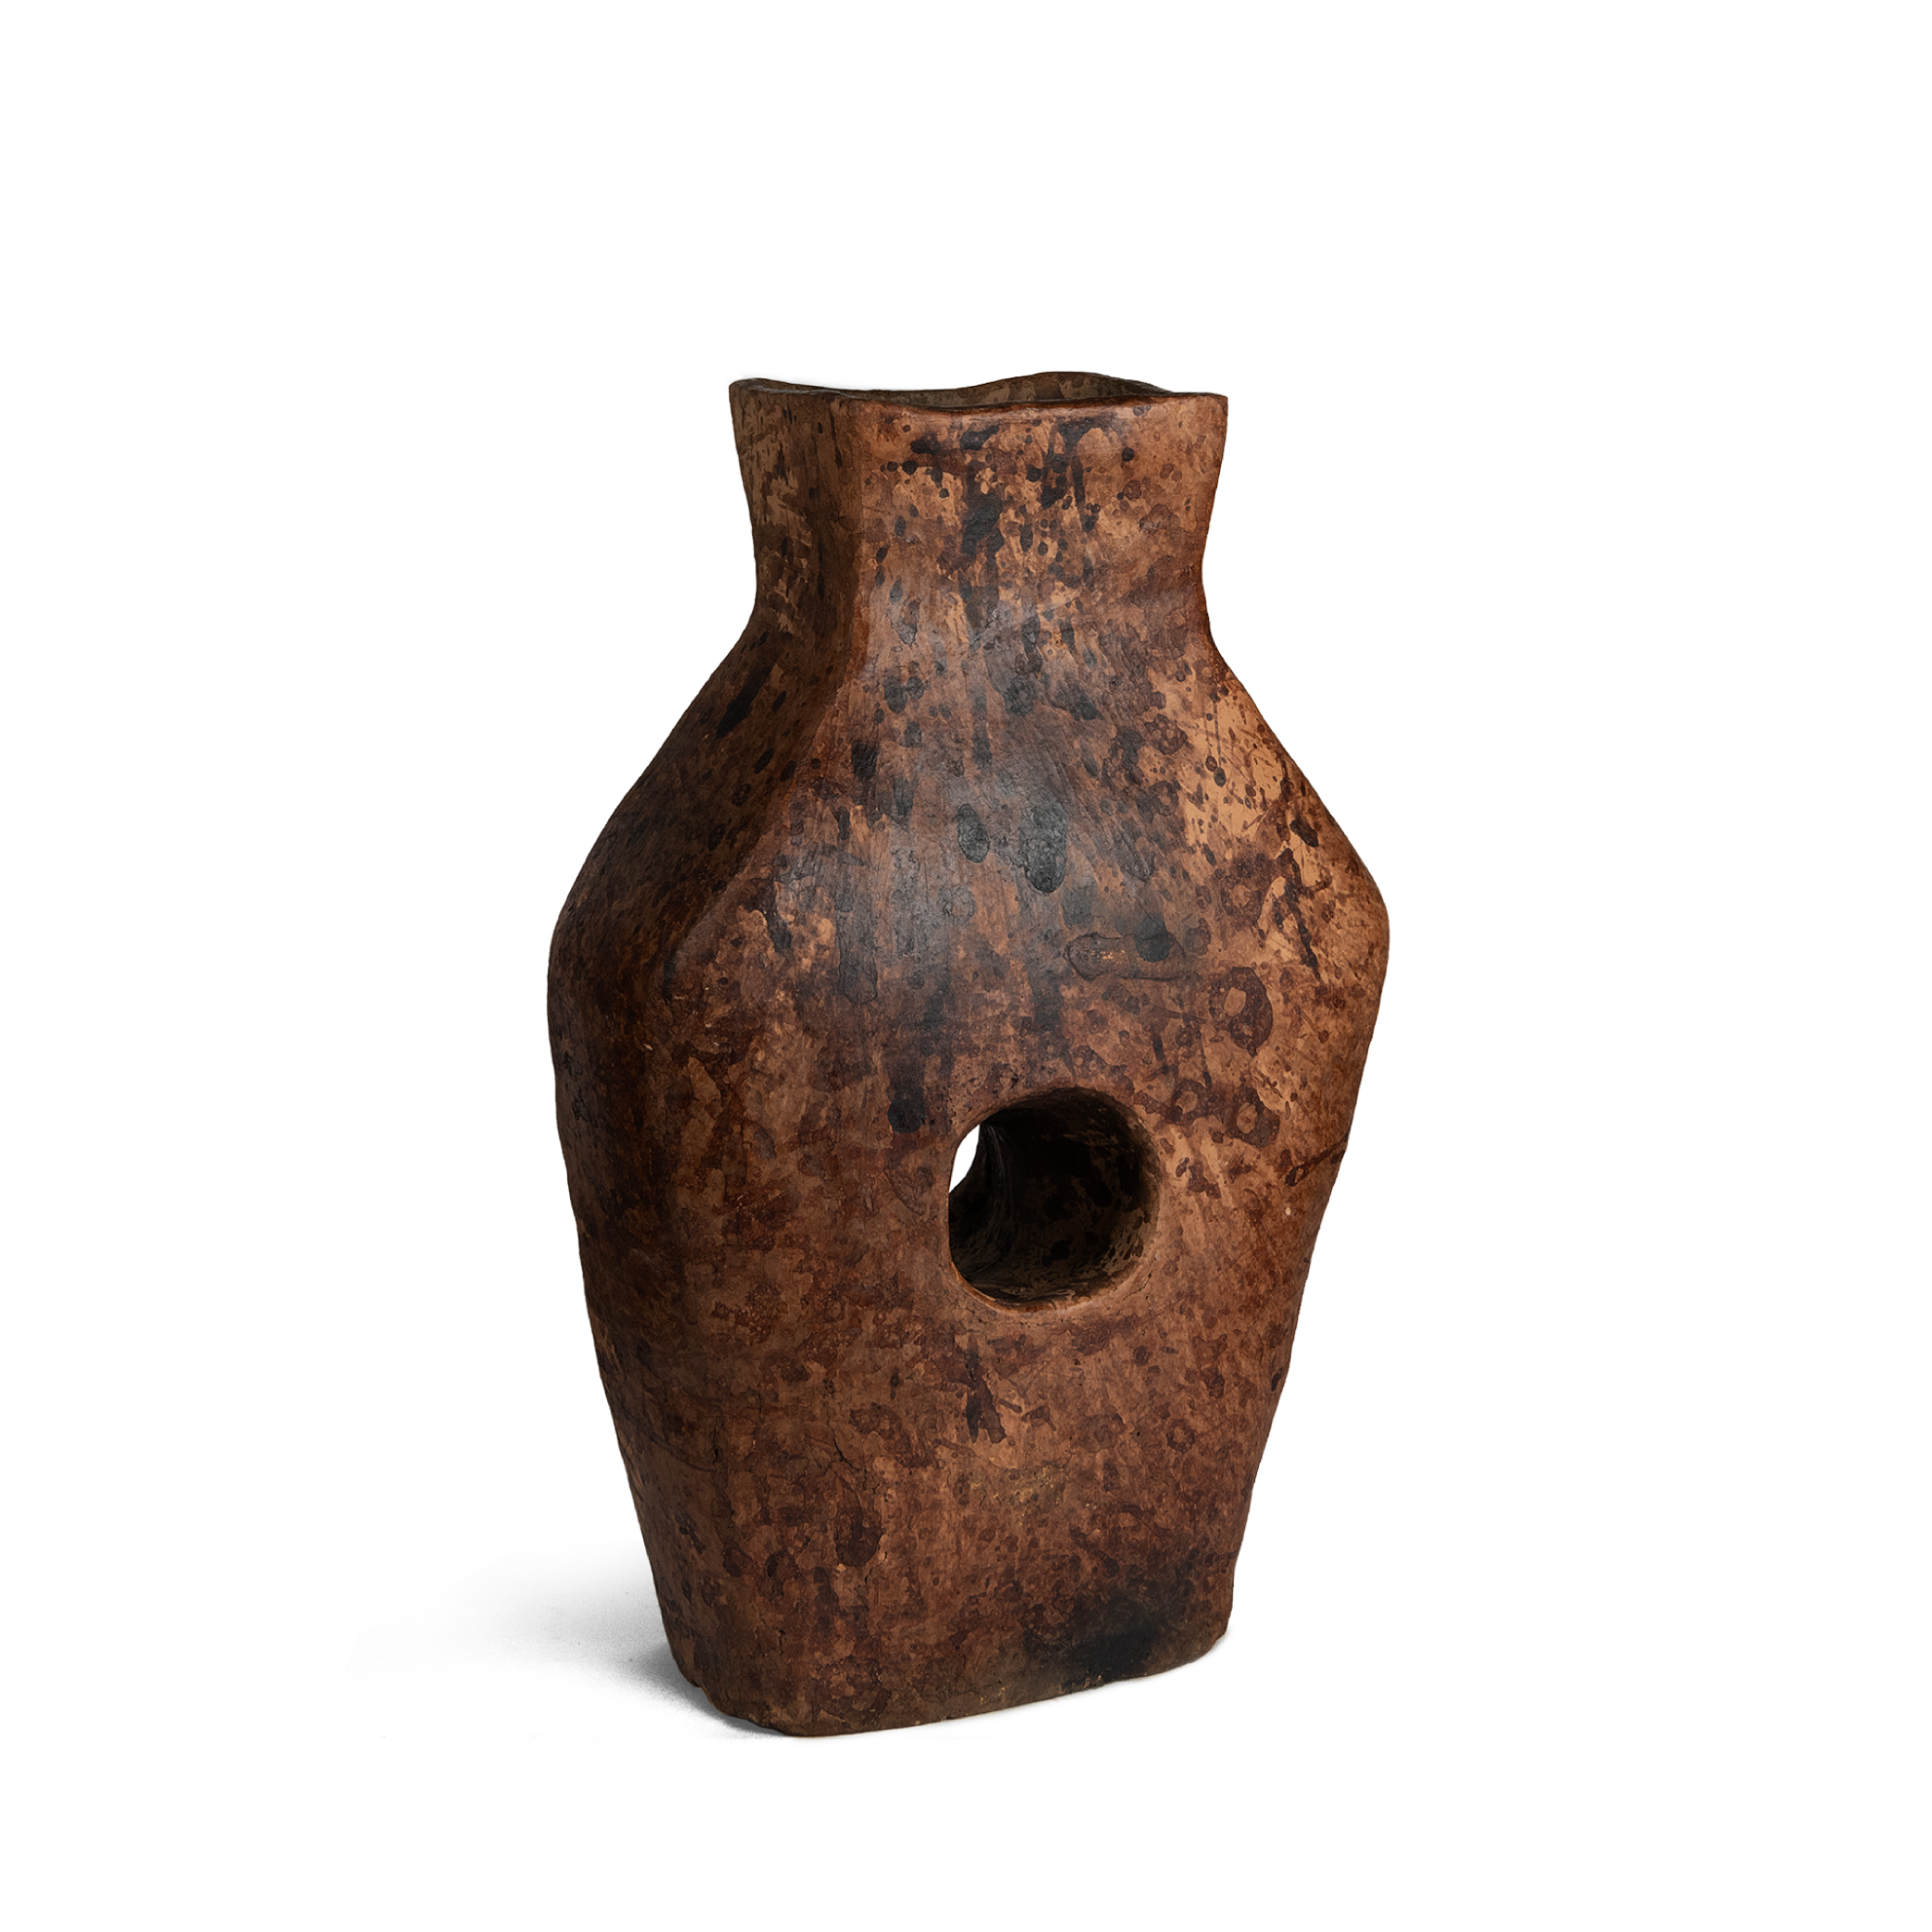 The Leikai Vase